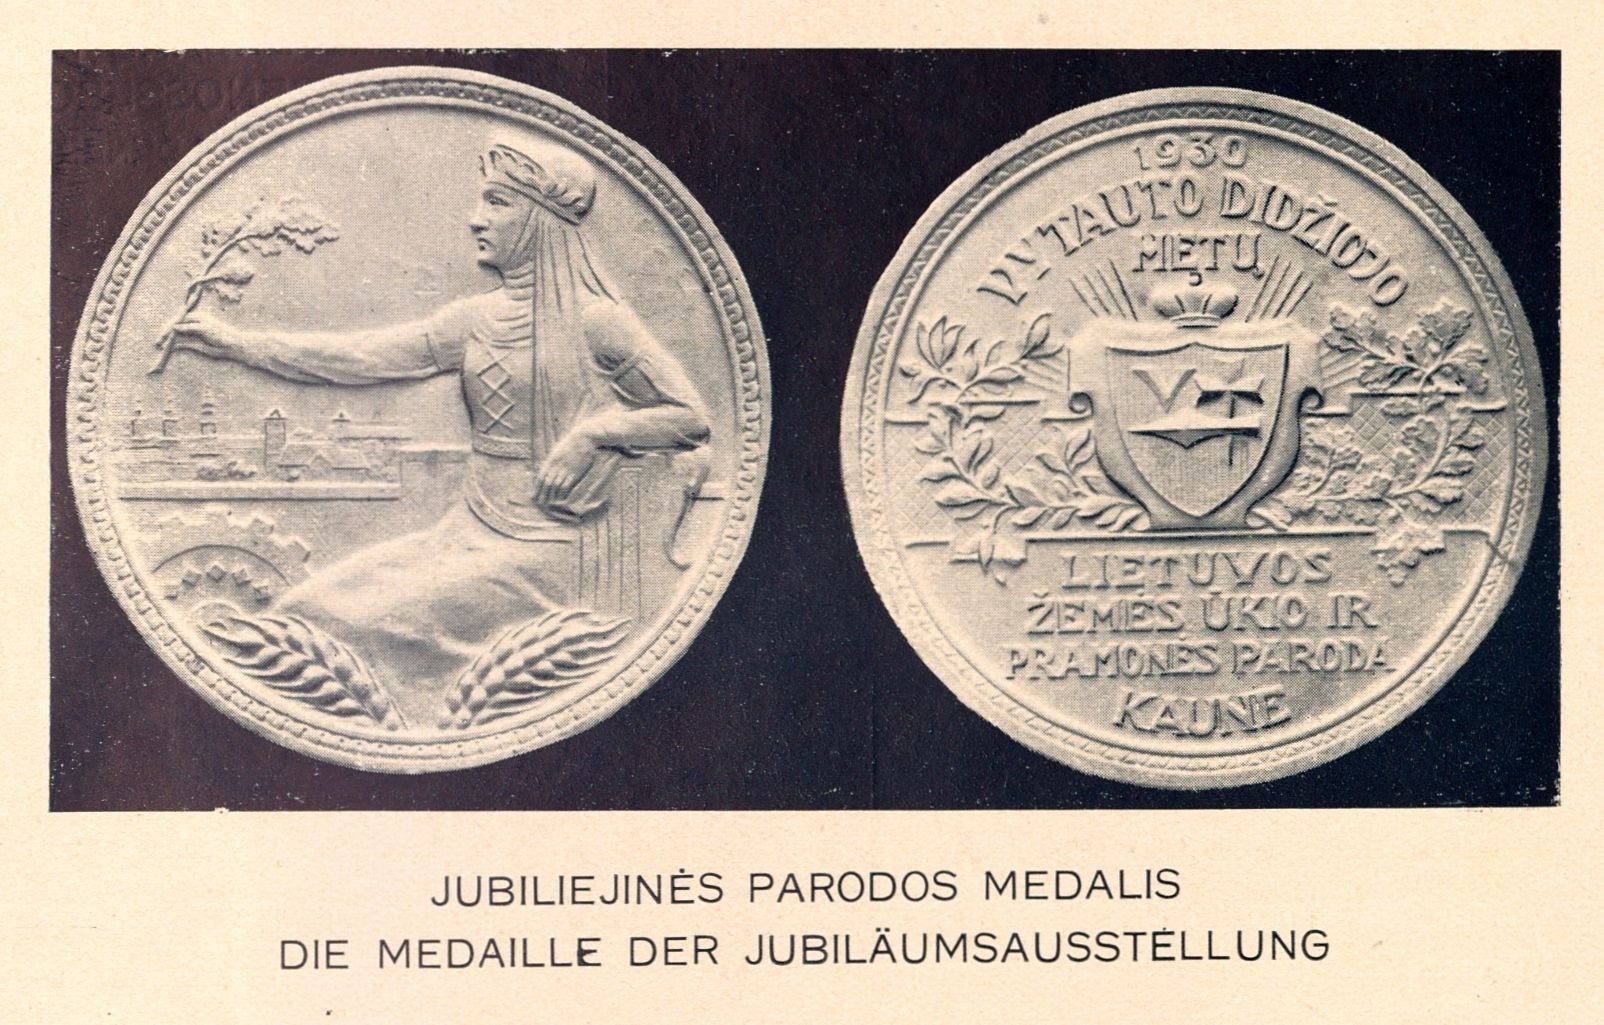 Jubiliejinės parodos medalis